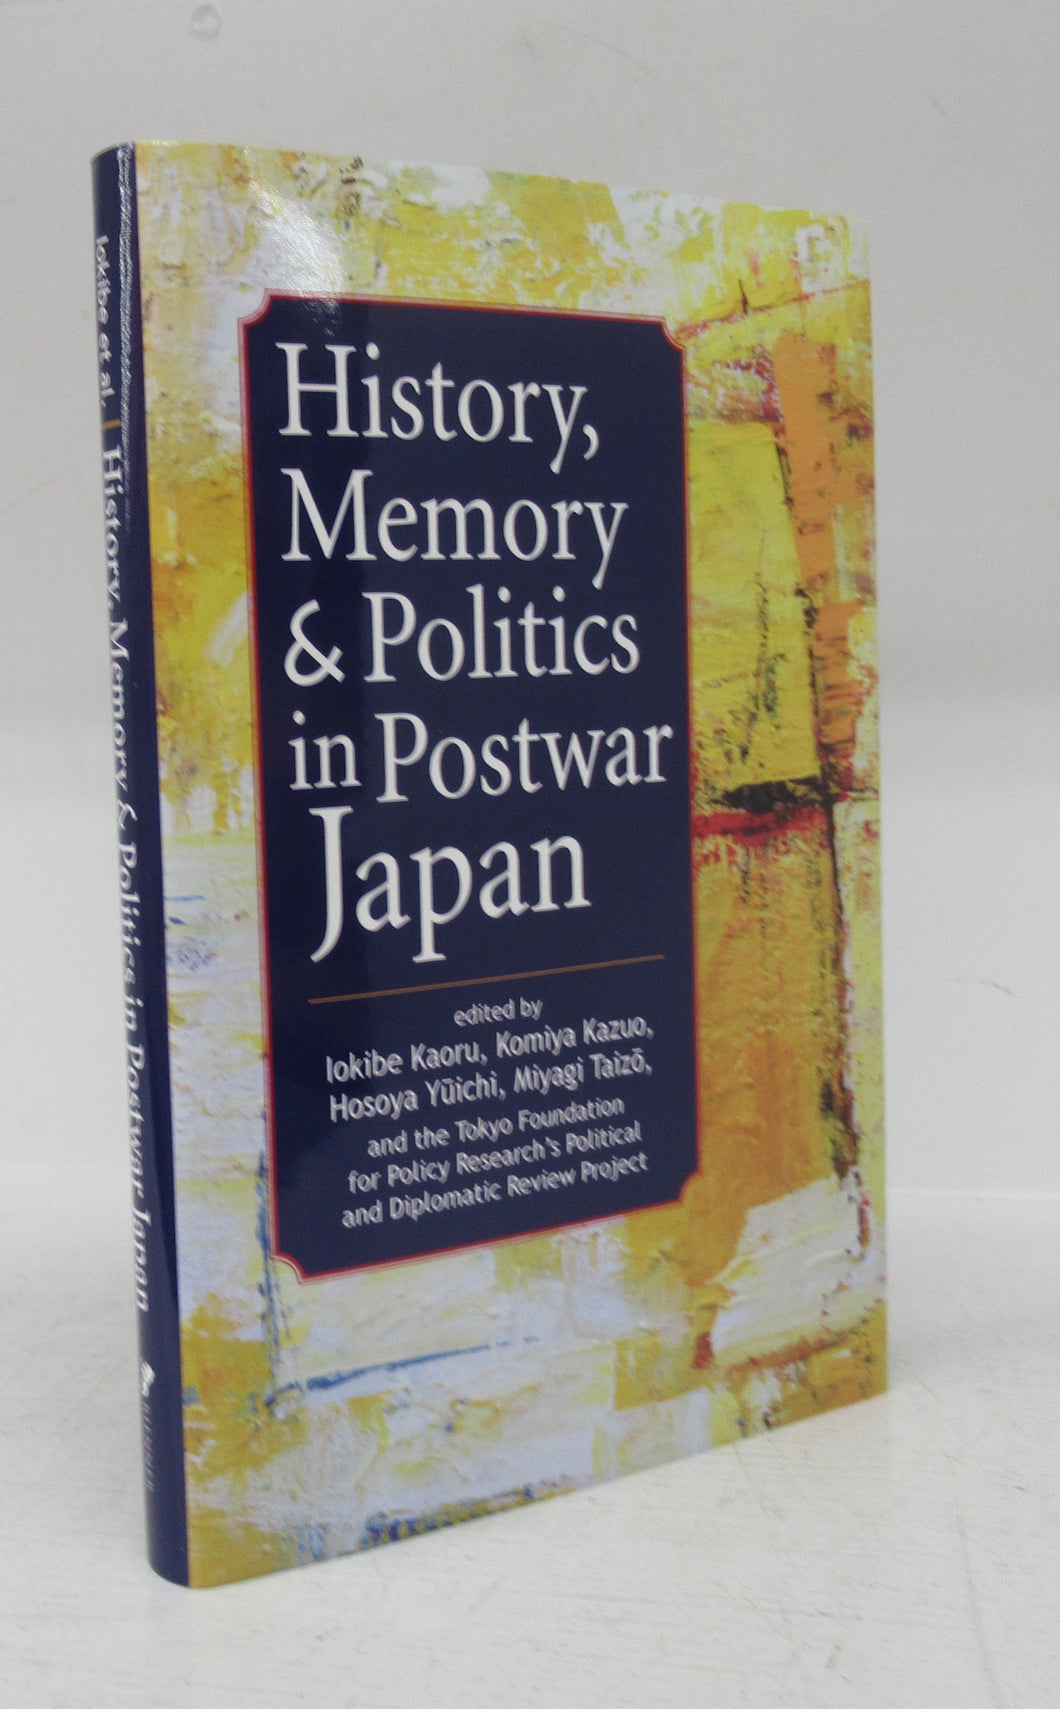 History, Memory & Politics in Postwar Japan